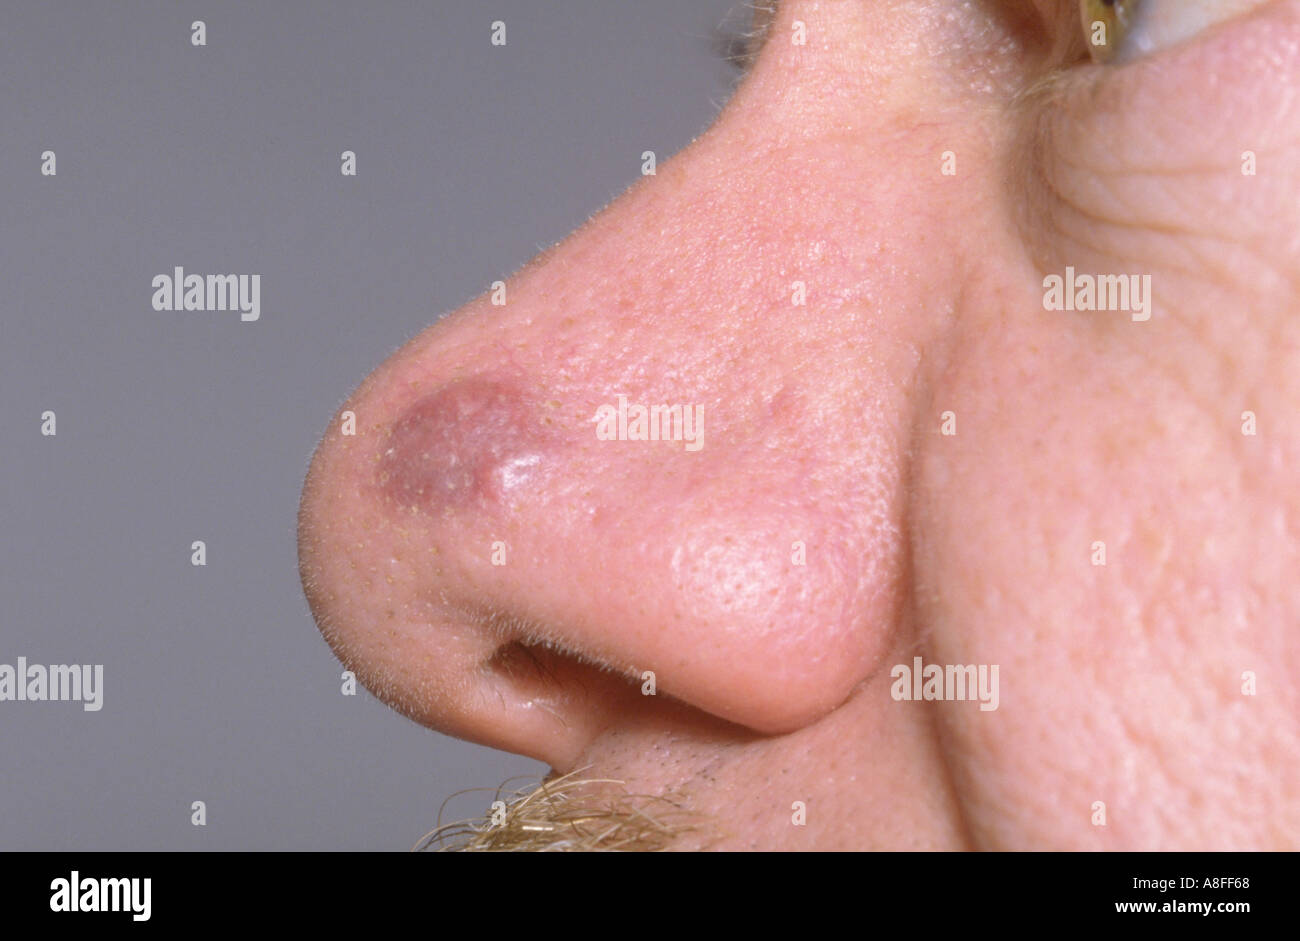 Kaposis sarcoma on nose Stock Photo